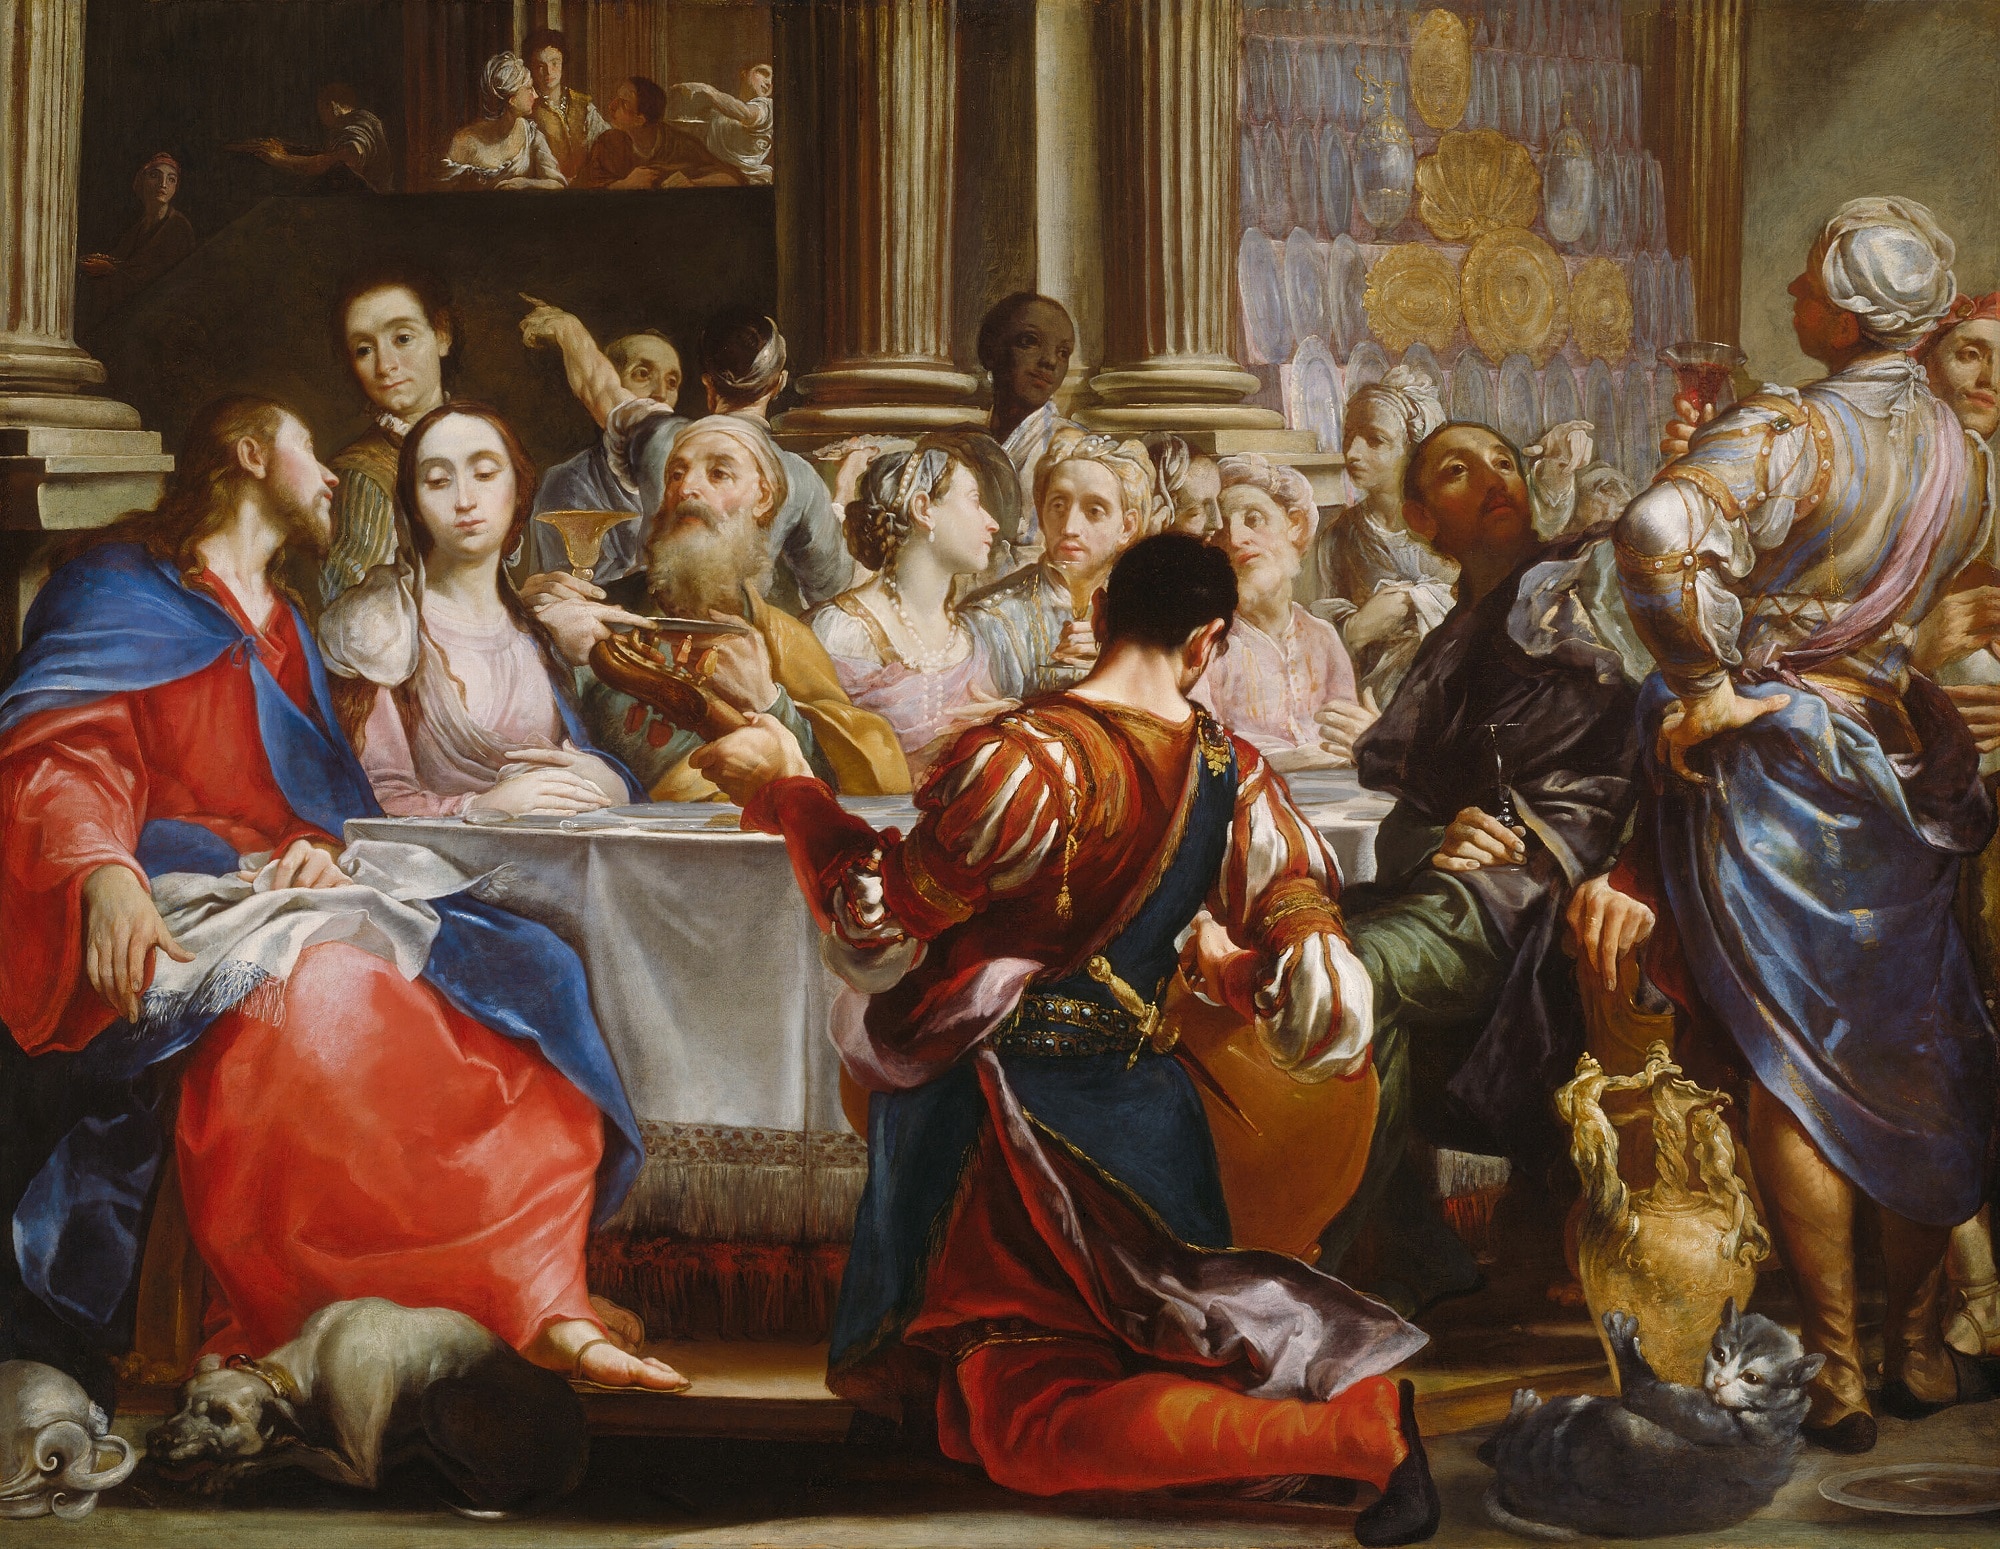 Giuseppe Maria Crespi, Le Nozze di Cana, 1691, olio su tela, 188×248,4cm., Art Institute, Chicago